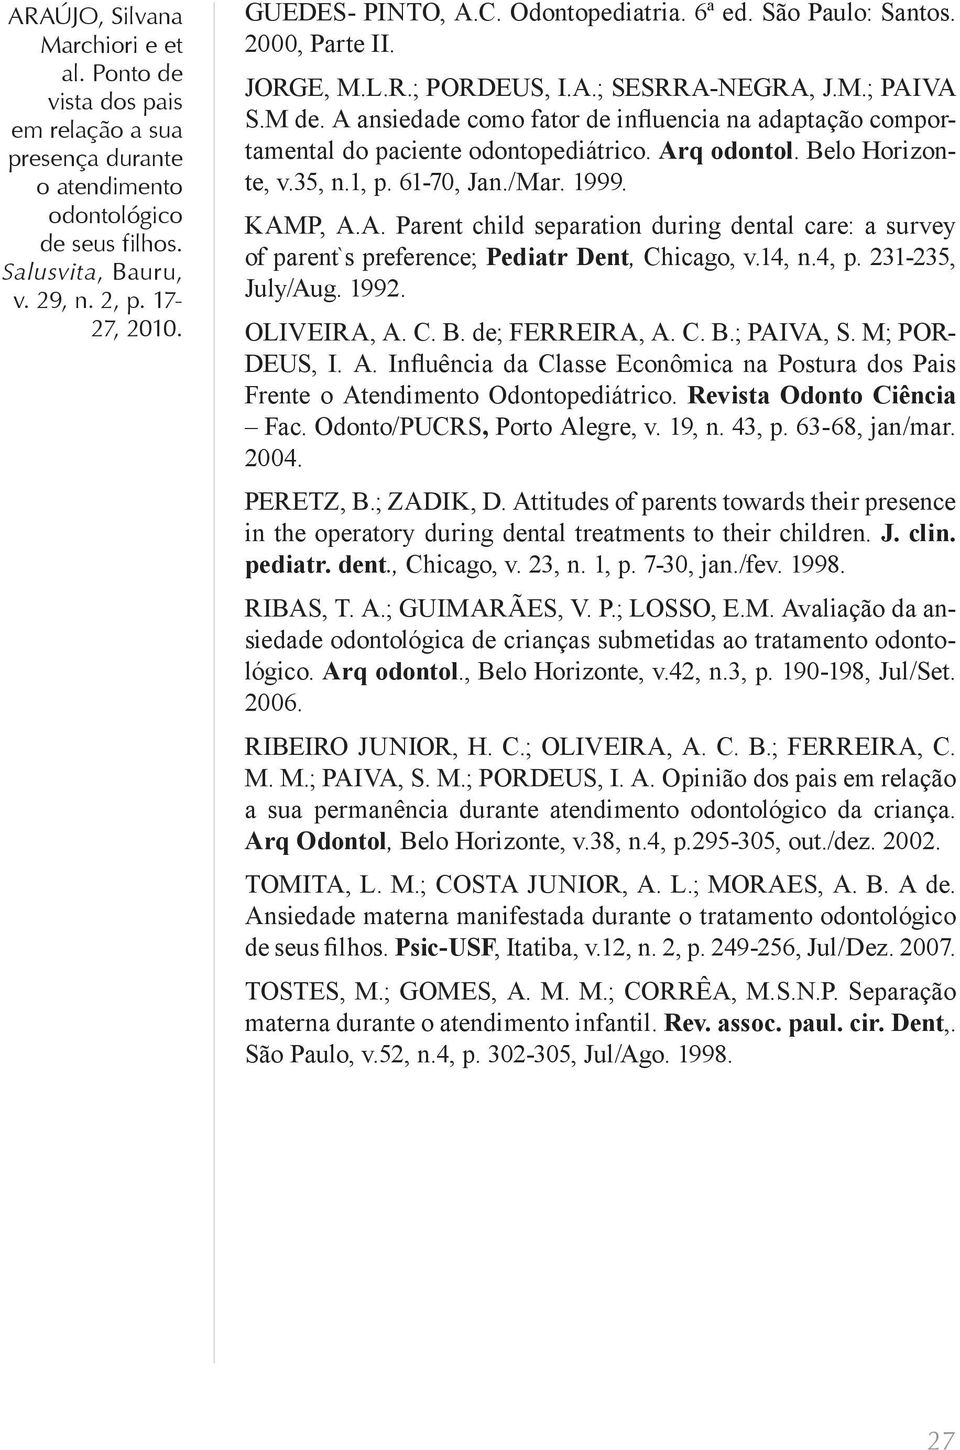 14, n.4, p. 231-235, July/Aug. 1992. OLIVEIRA, A. C. B. de; FERREIRA, A. C. B.; PAIVA, S. M; POR- DEUS, I. A. Influência da Classe Econômica na Postura dos Pais Frente o Atendimento Odontopediátrico.